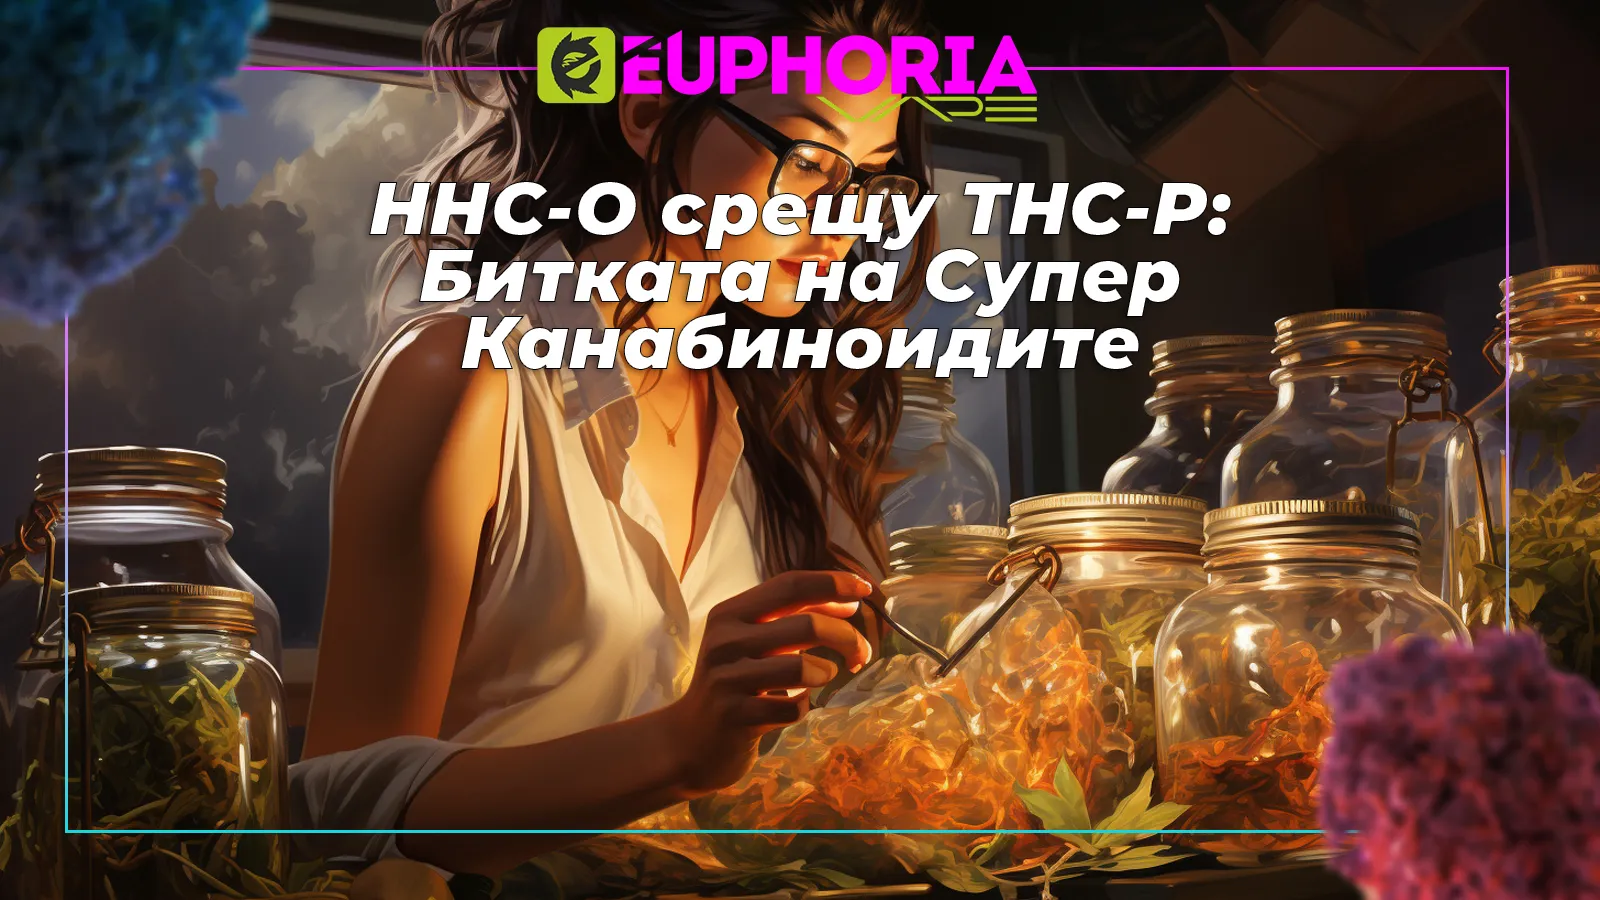 Специалист обсъжда HHC-O и THC-P канабиноиди в лаборатория Euphoria